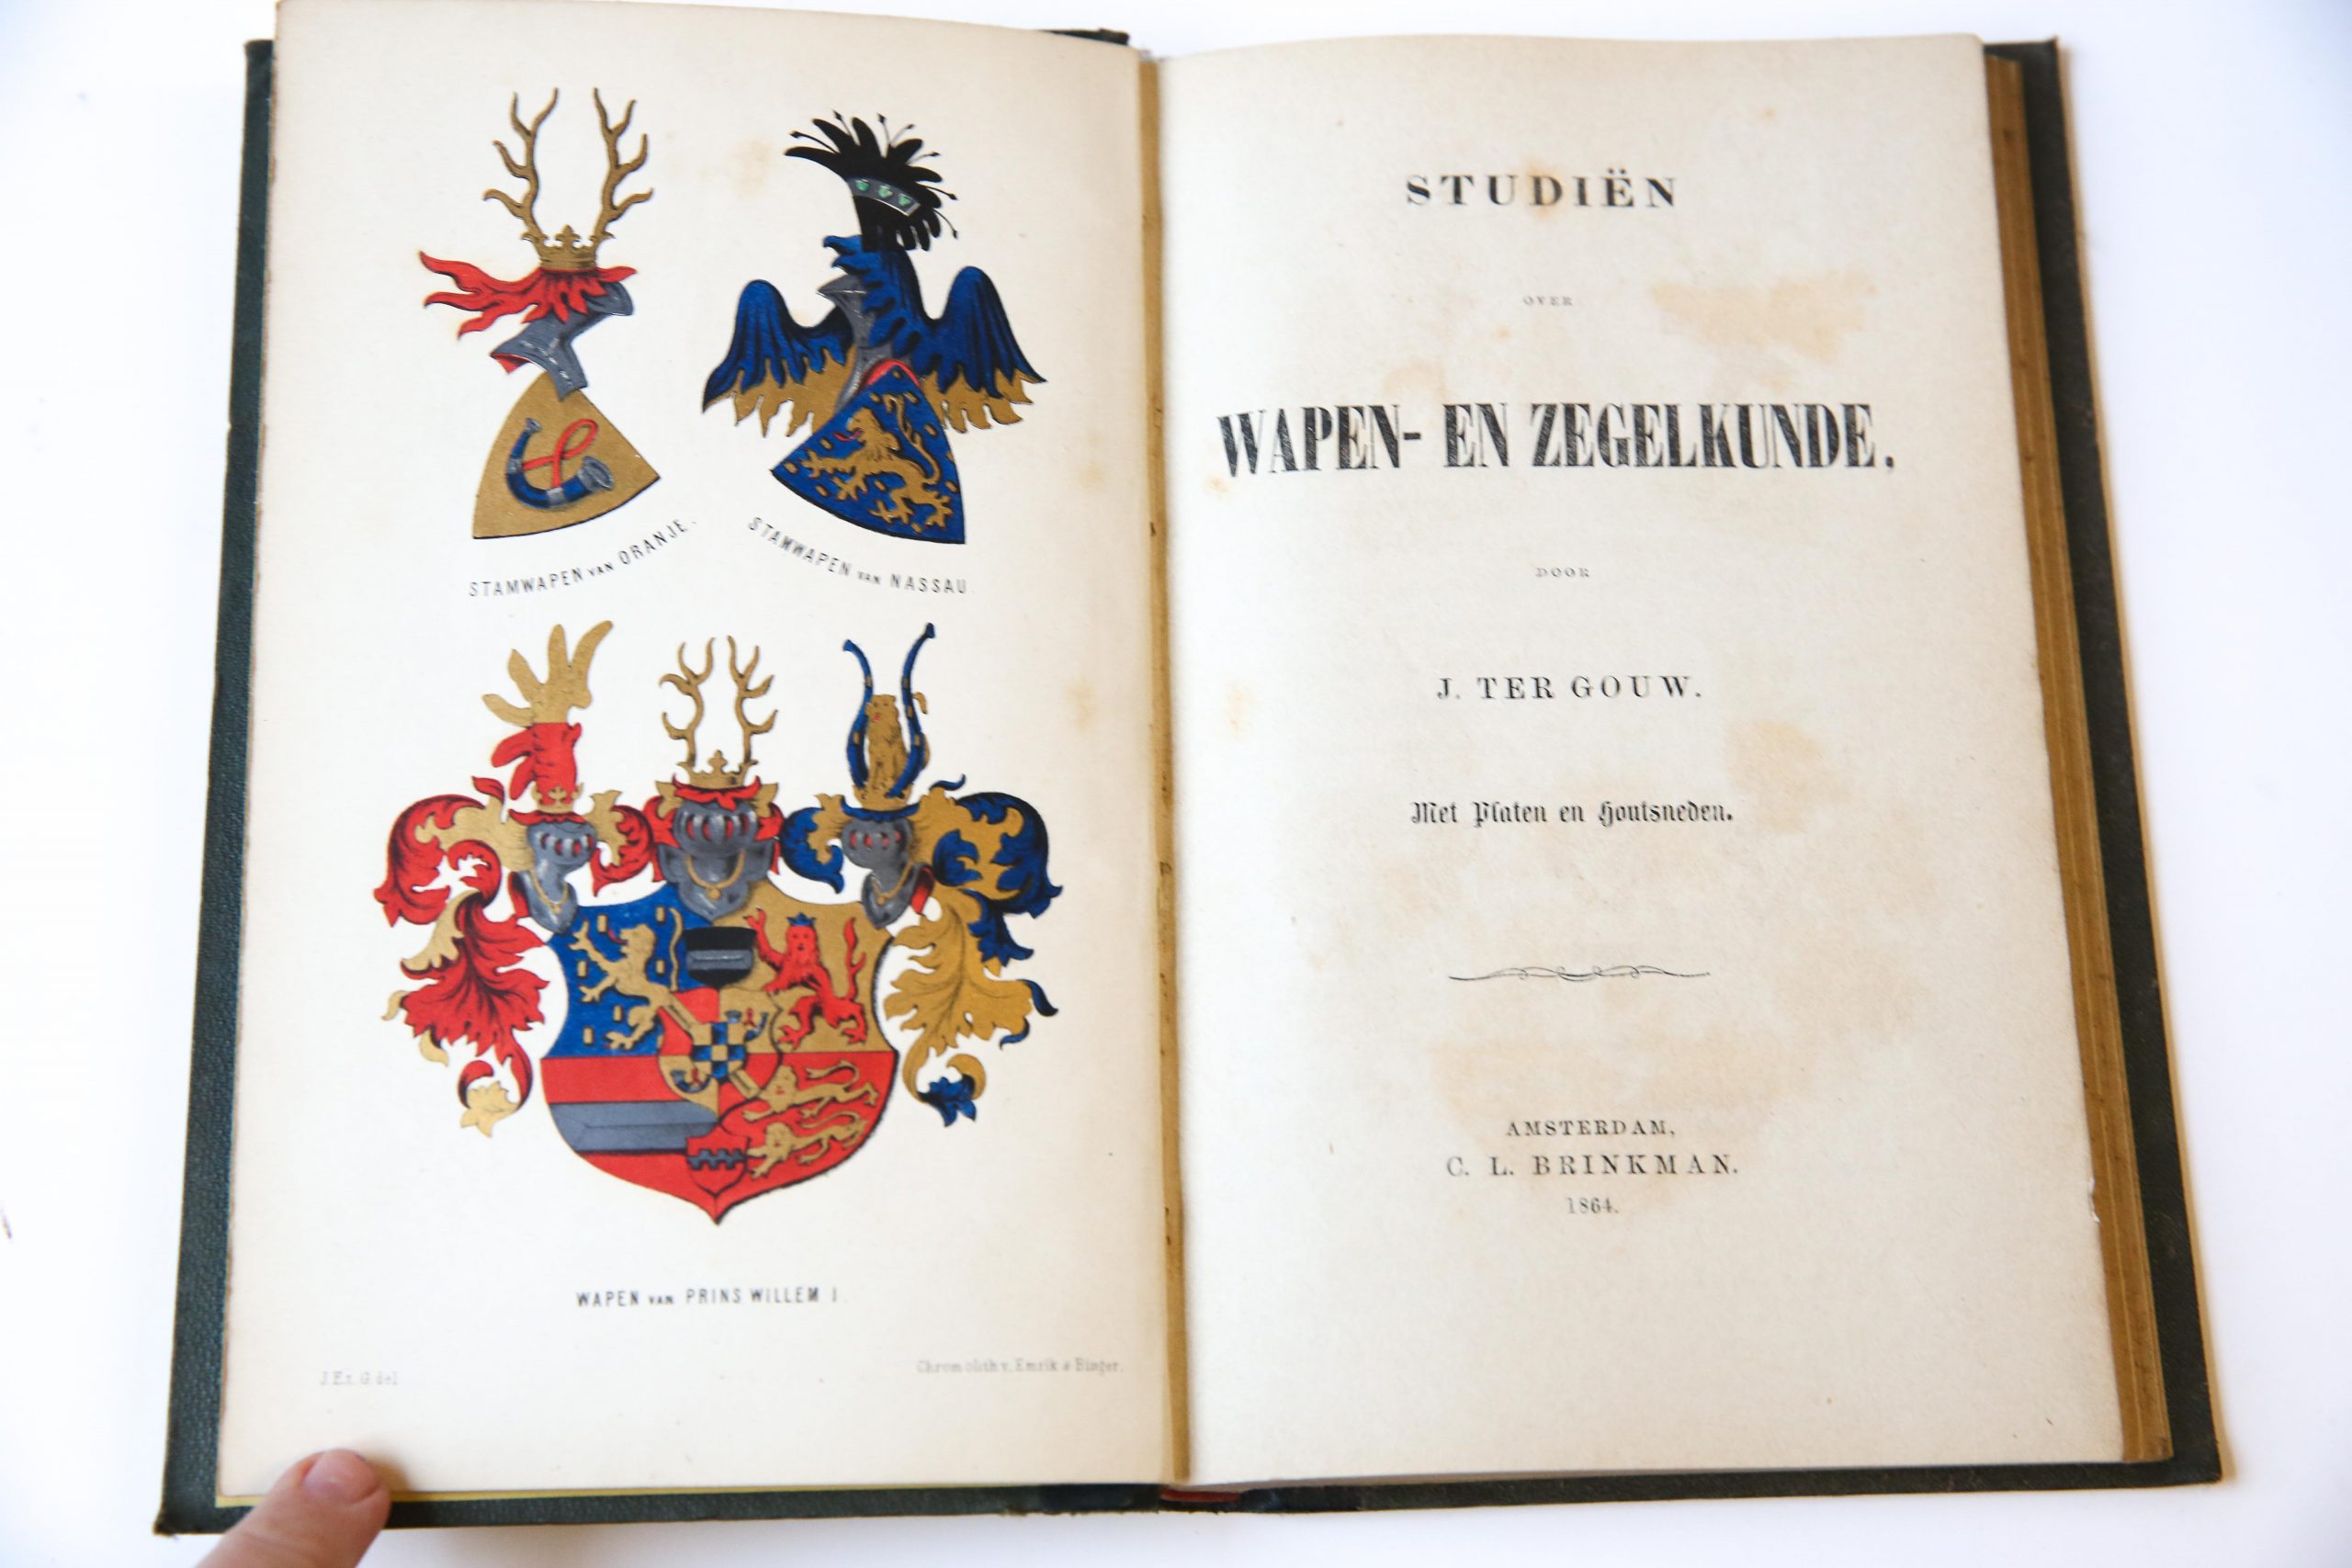 Studiën over wapen- en zegelkunde. Amsterdam 1864. Geïll., 222 p. (onder andere met chromolitho's).